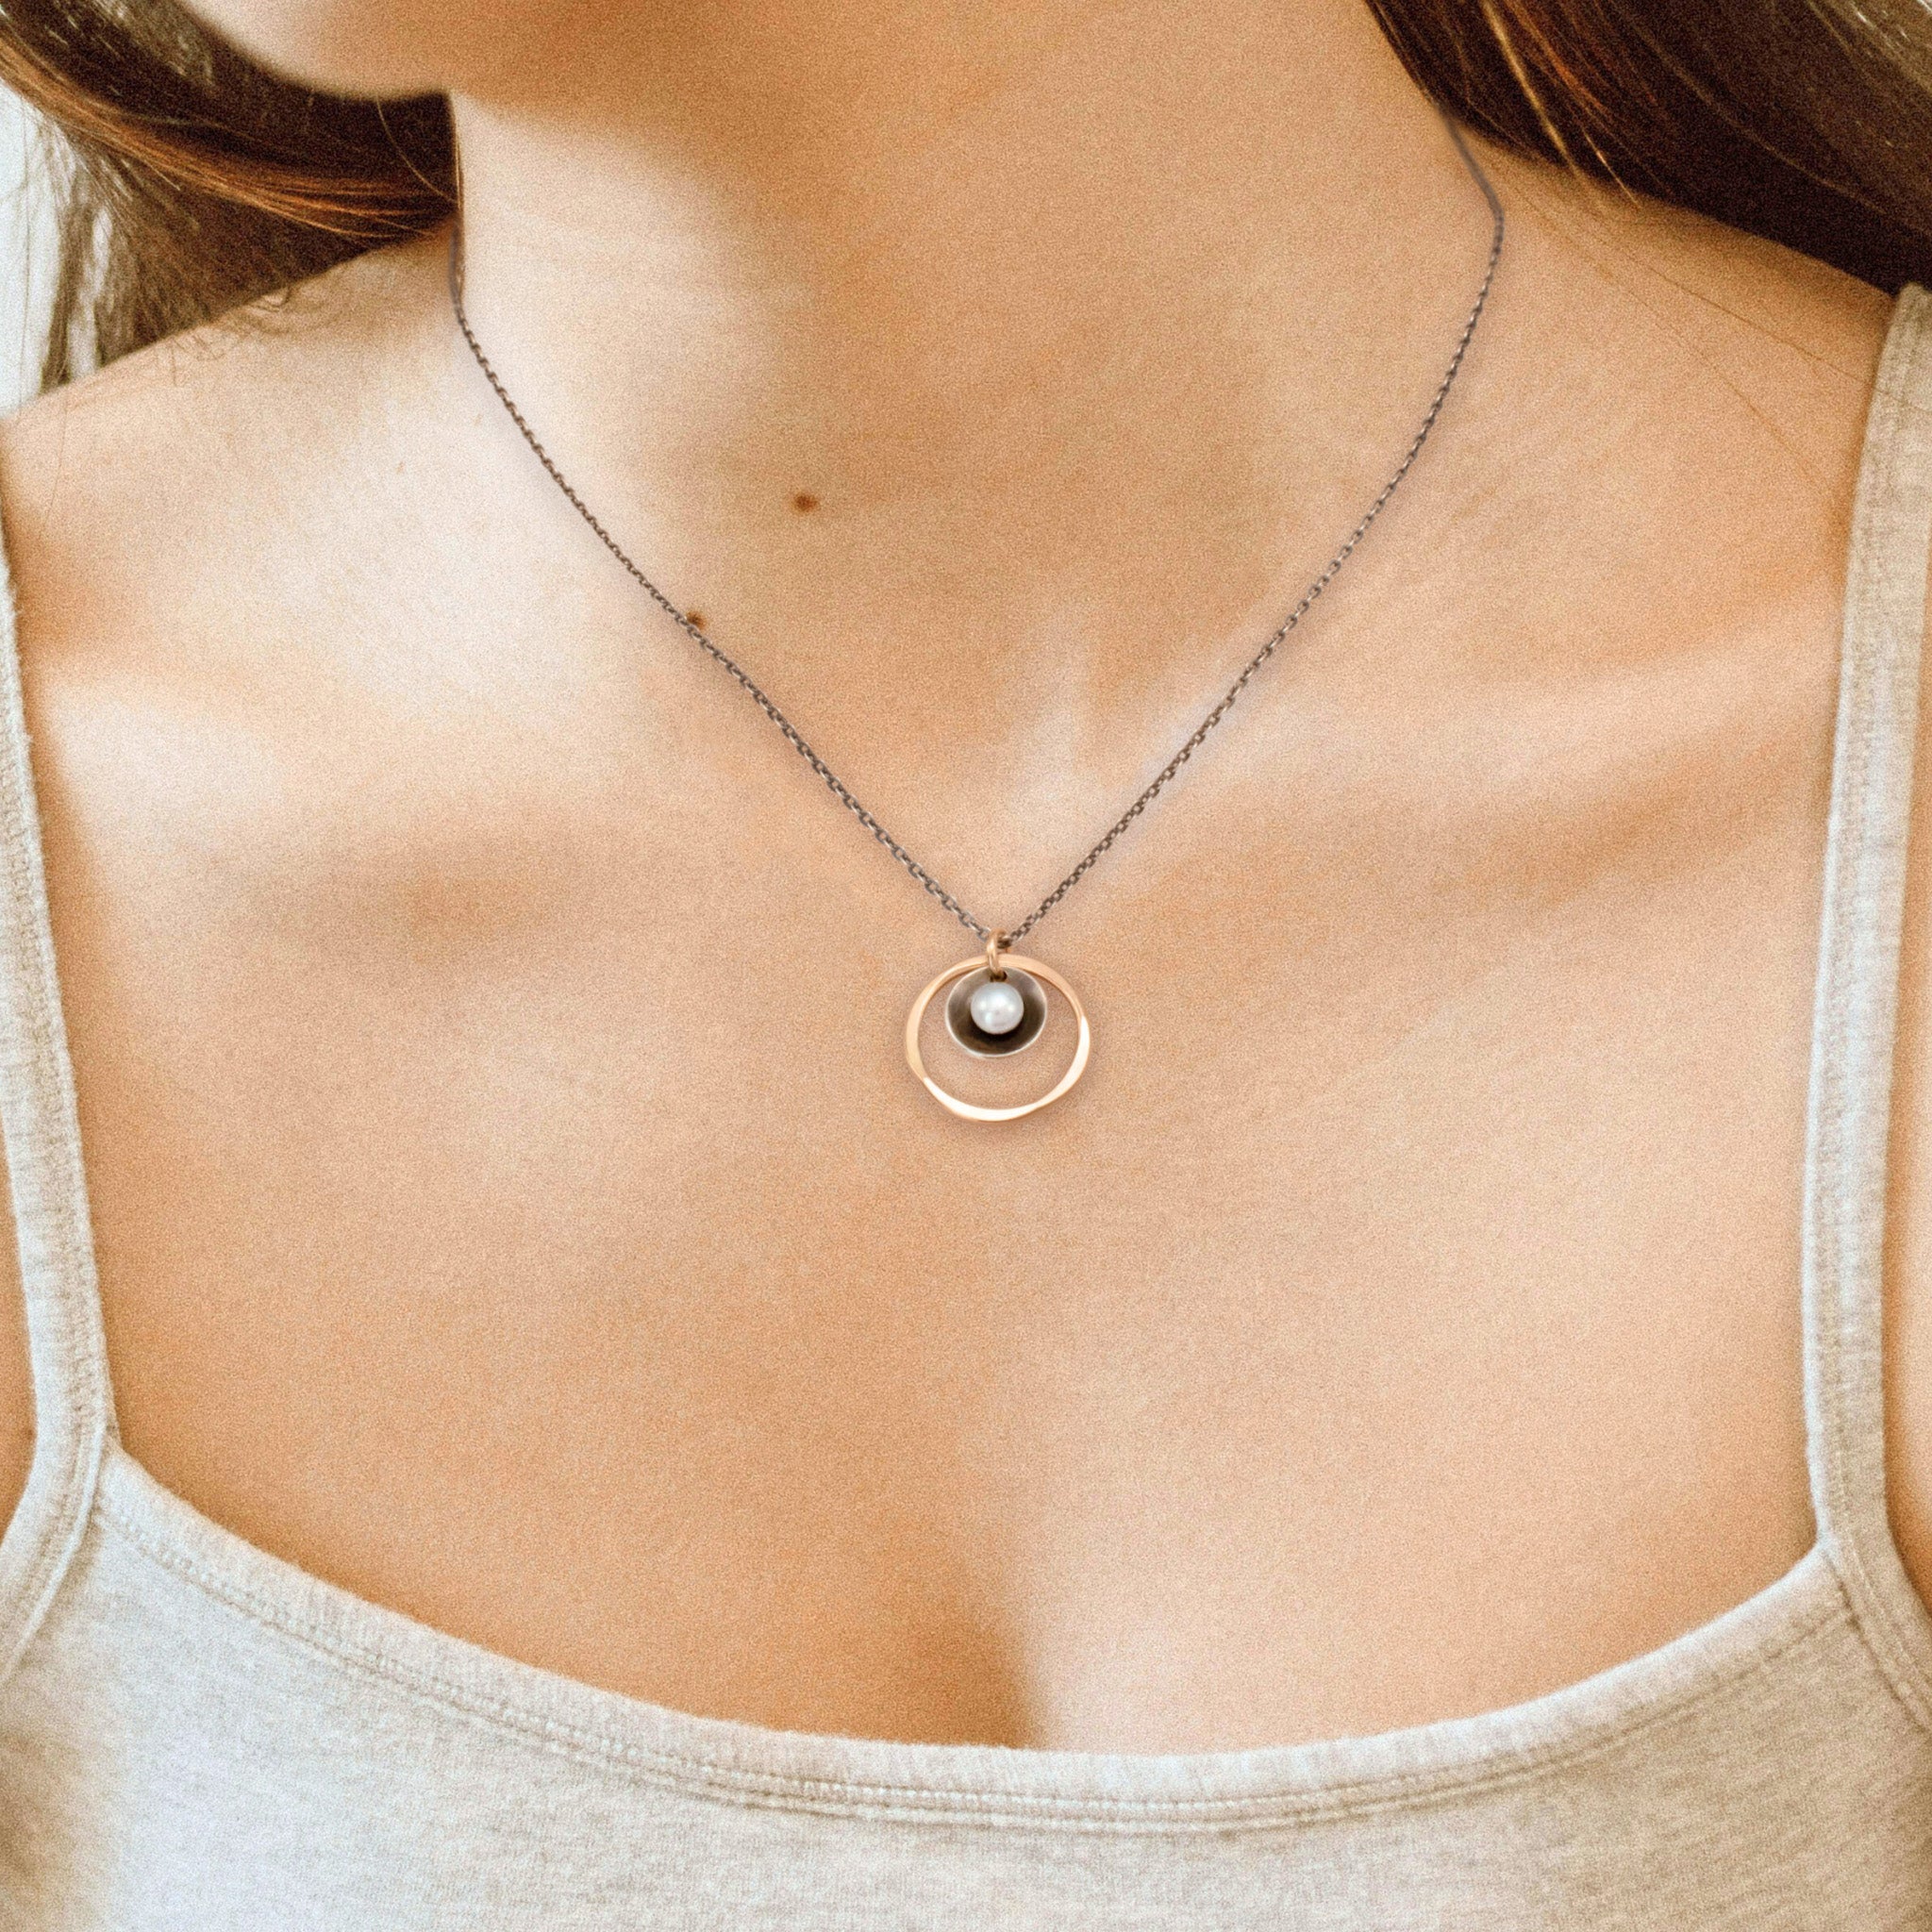 Shadow Pearl Necklace - Necklaces